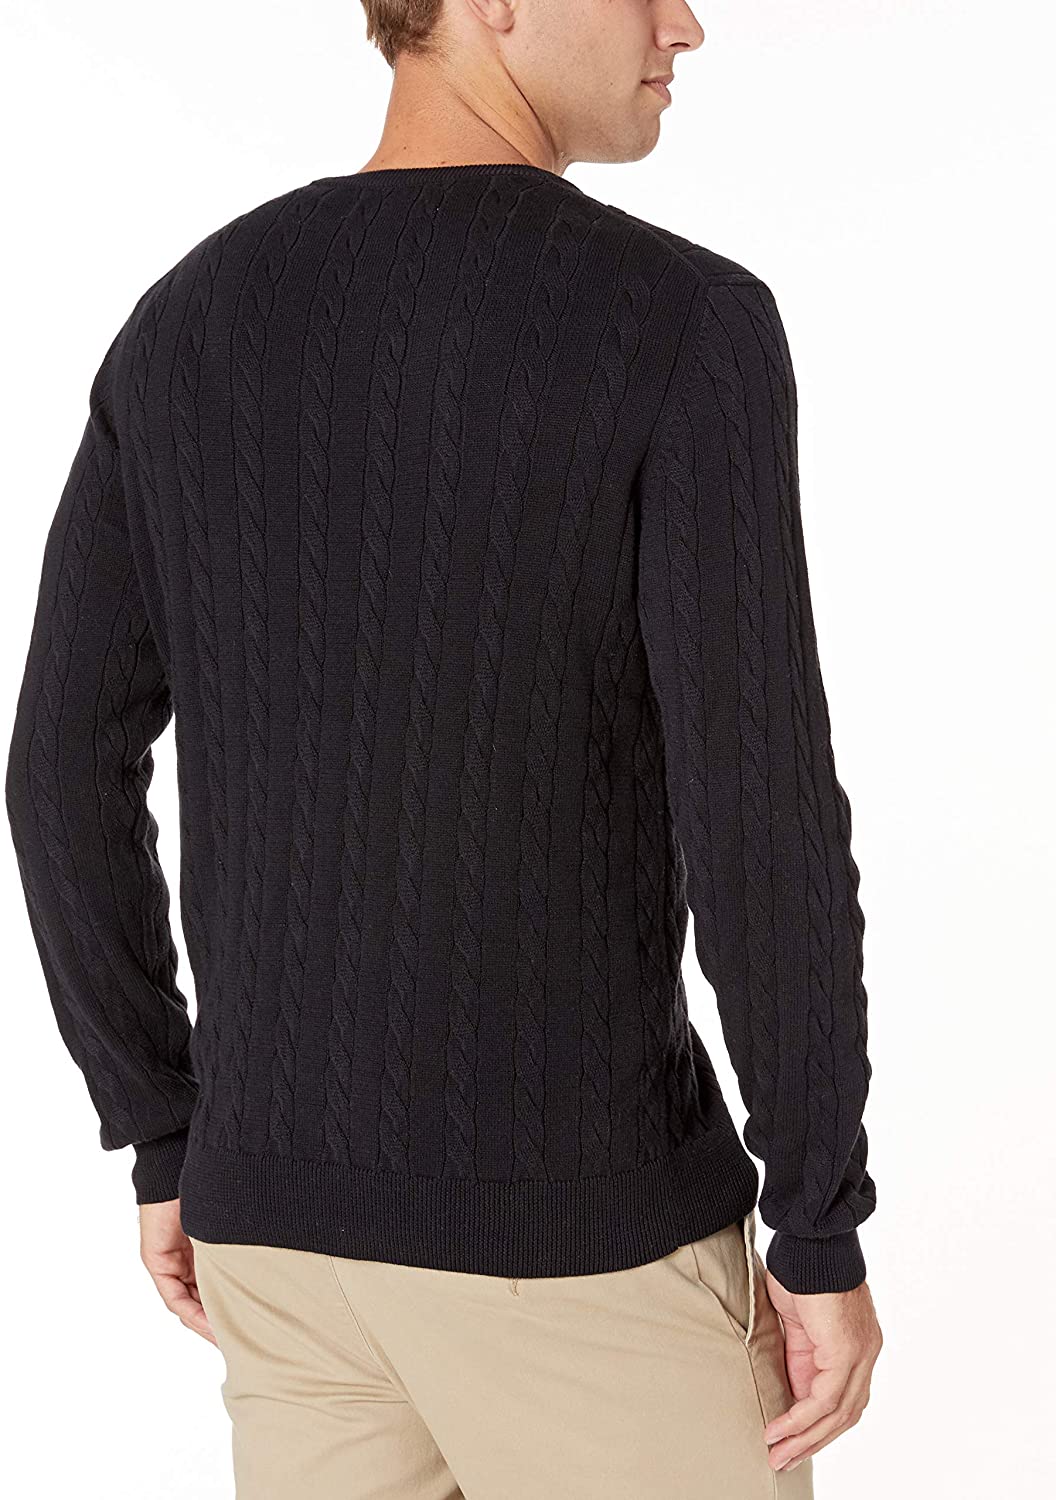 Essentials Men's Crewneck Cable Cotton Sweater, Black, Size XX-Large ...